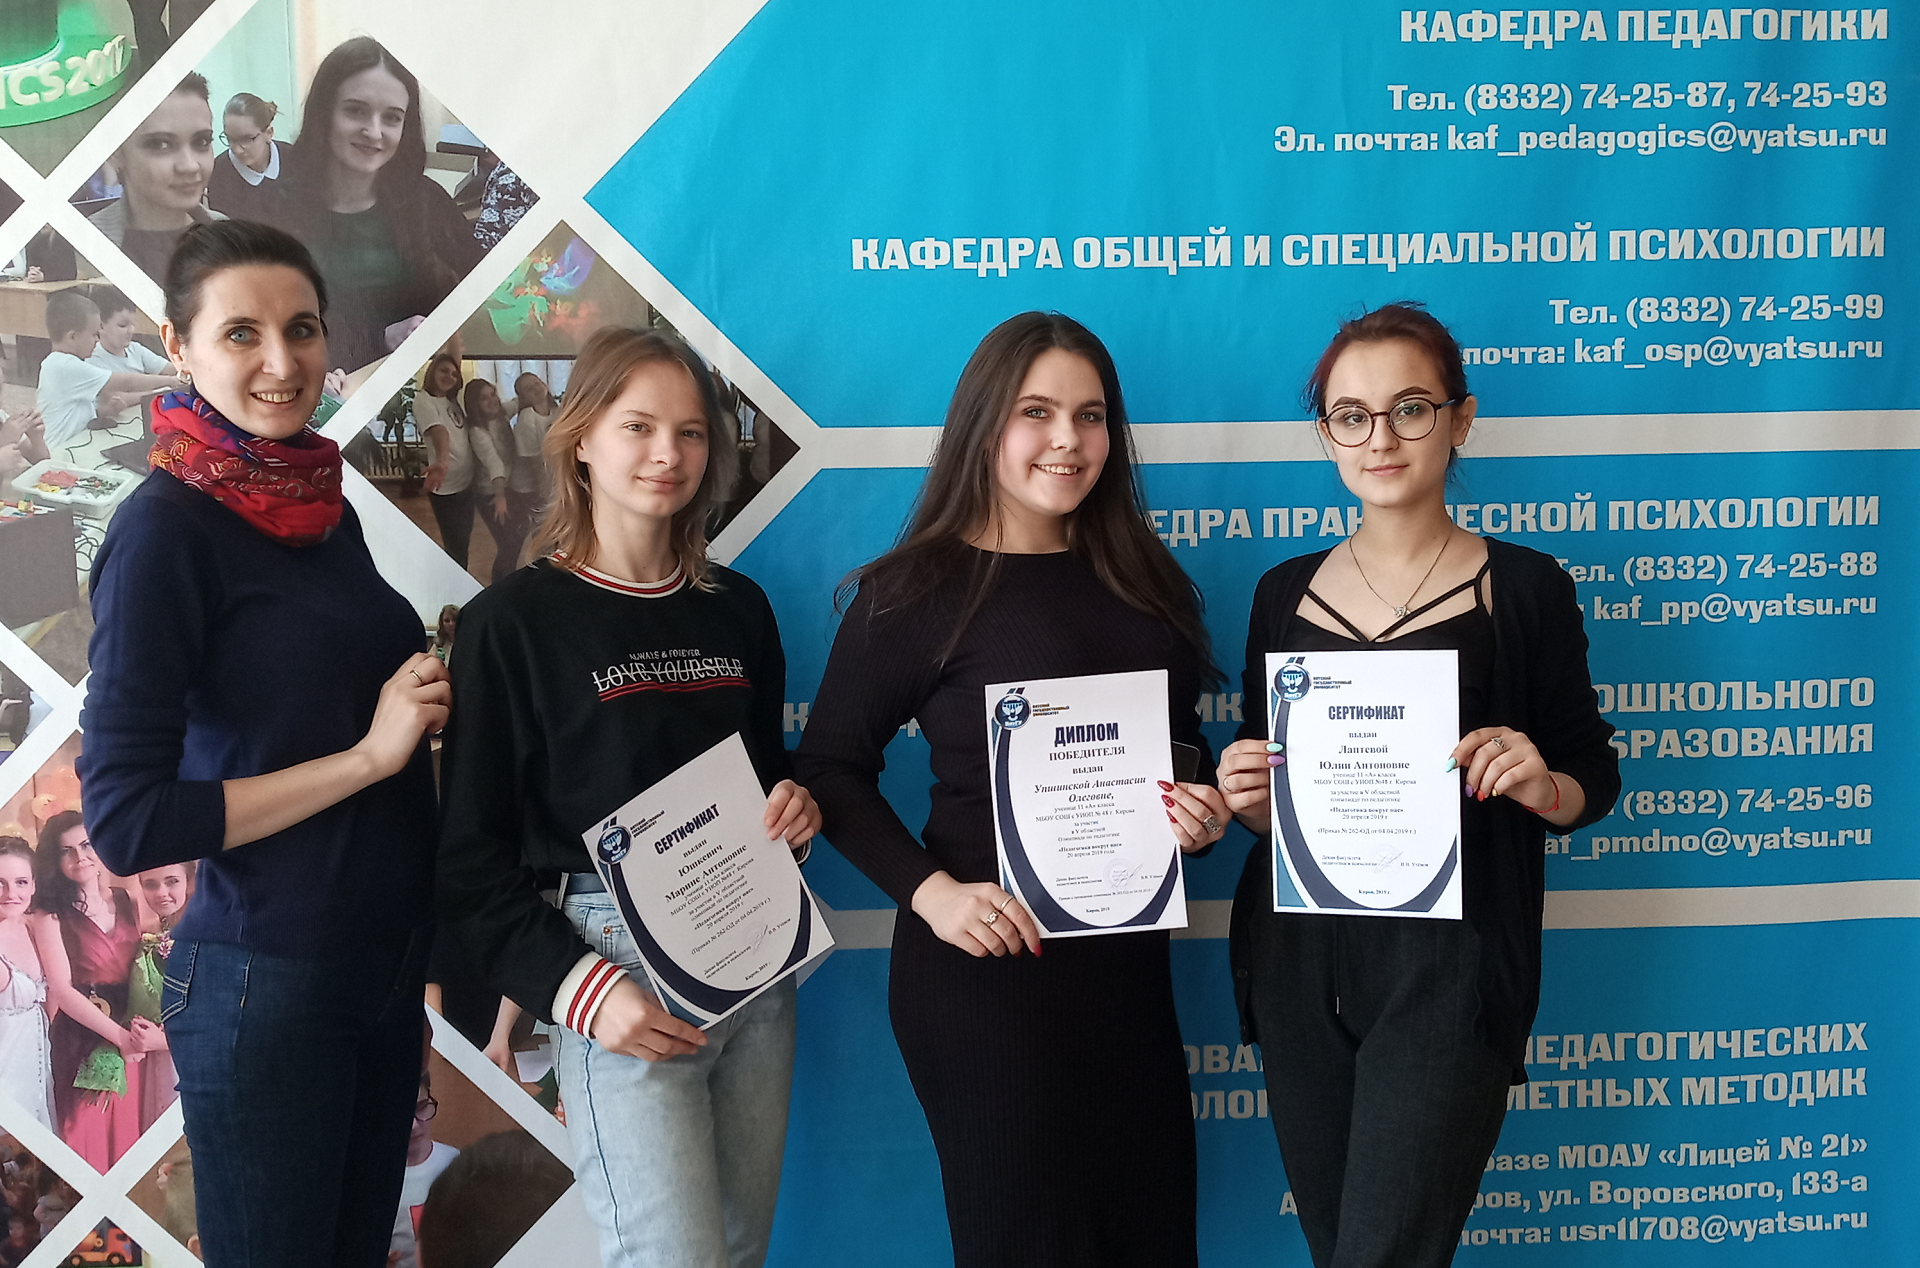 Более 200 старшеклассников г. Кирова и Кировской области приняли участие в Олимпиаде по педагогике